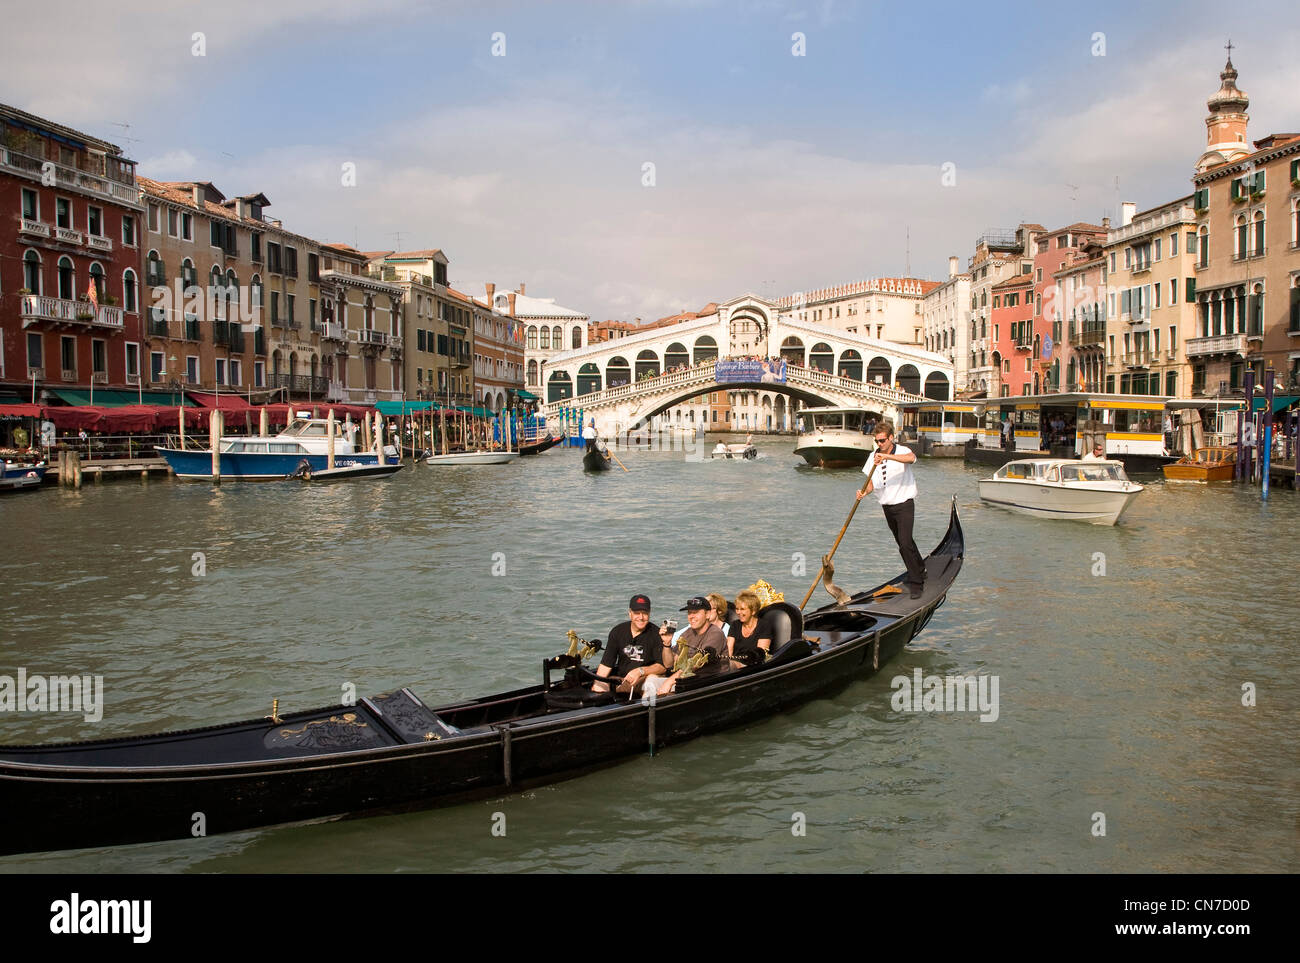 Turisti sul Canal Grande di Venezia, in una gondola, il ponte di Rialto in background, sera la luce solare, Italia Foto Stock